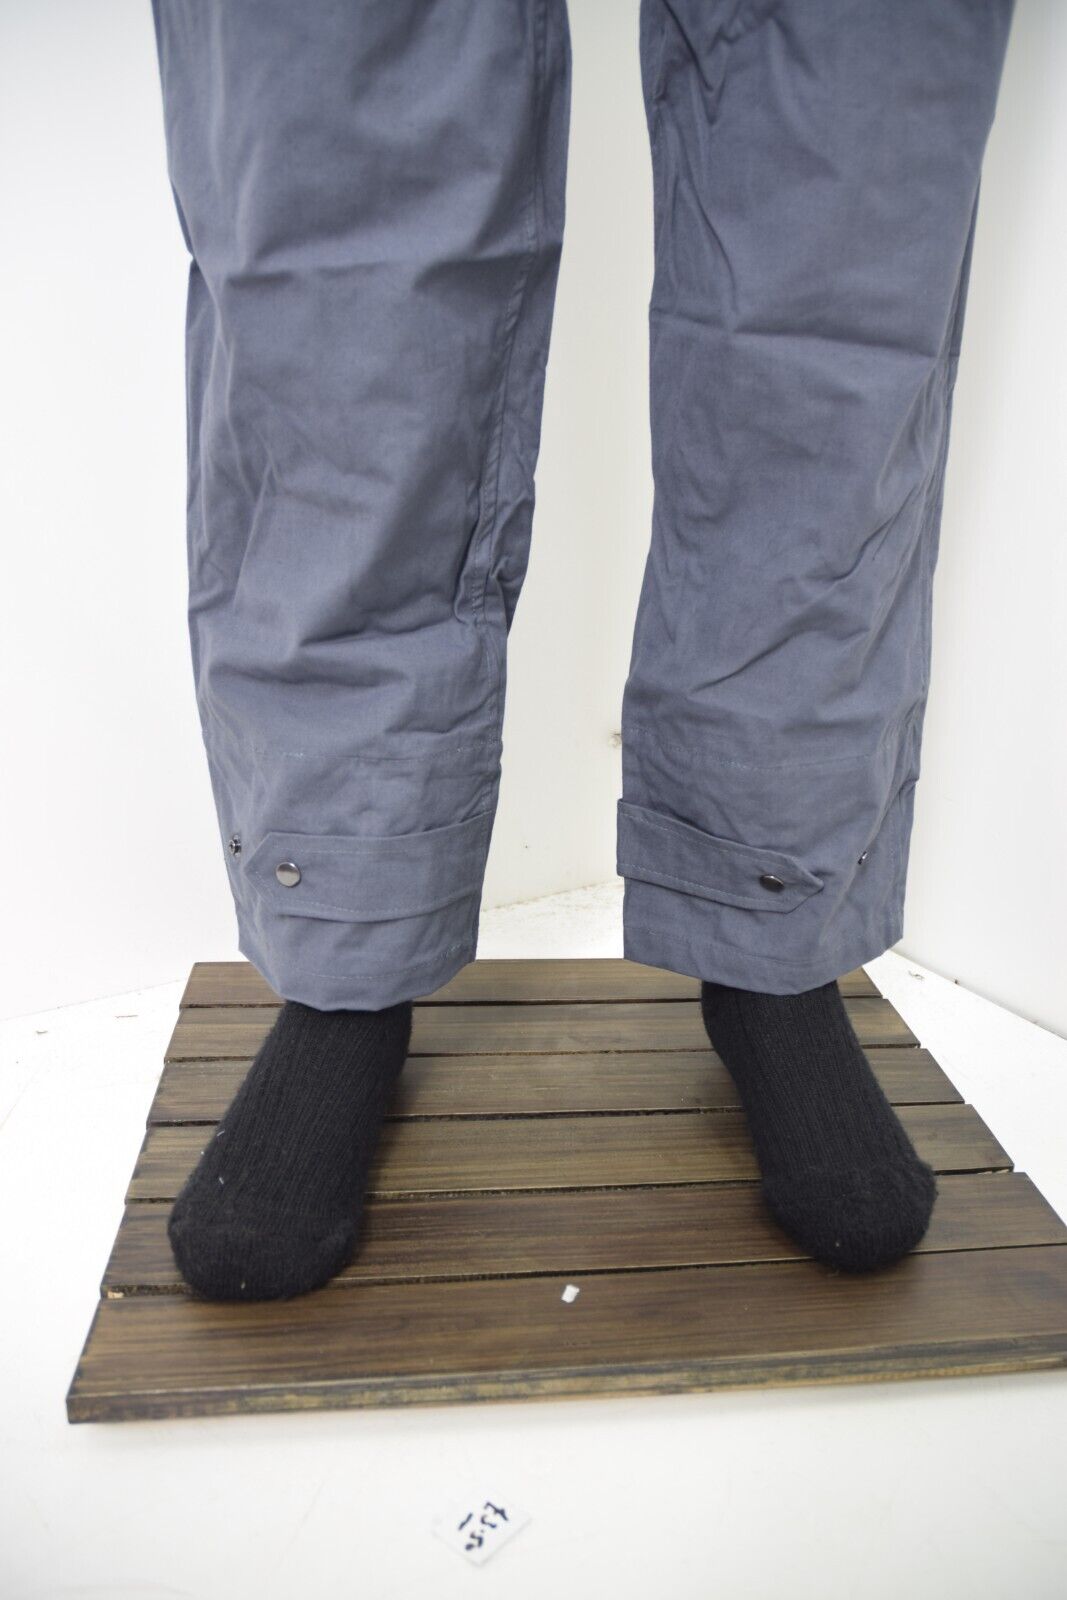 Czech Navy Deck Pants Ventile Bib & Brace Over Trousers 100% Cotton Army Surplus